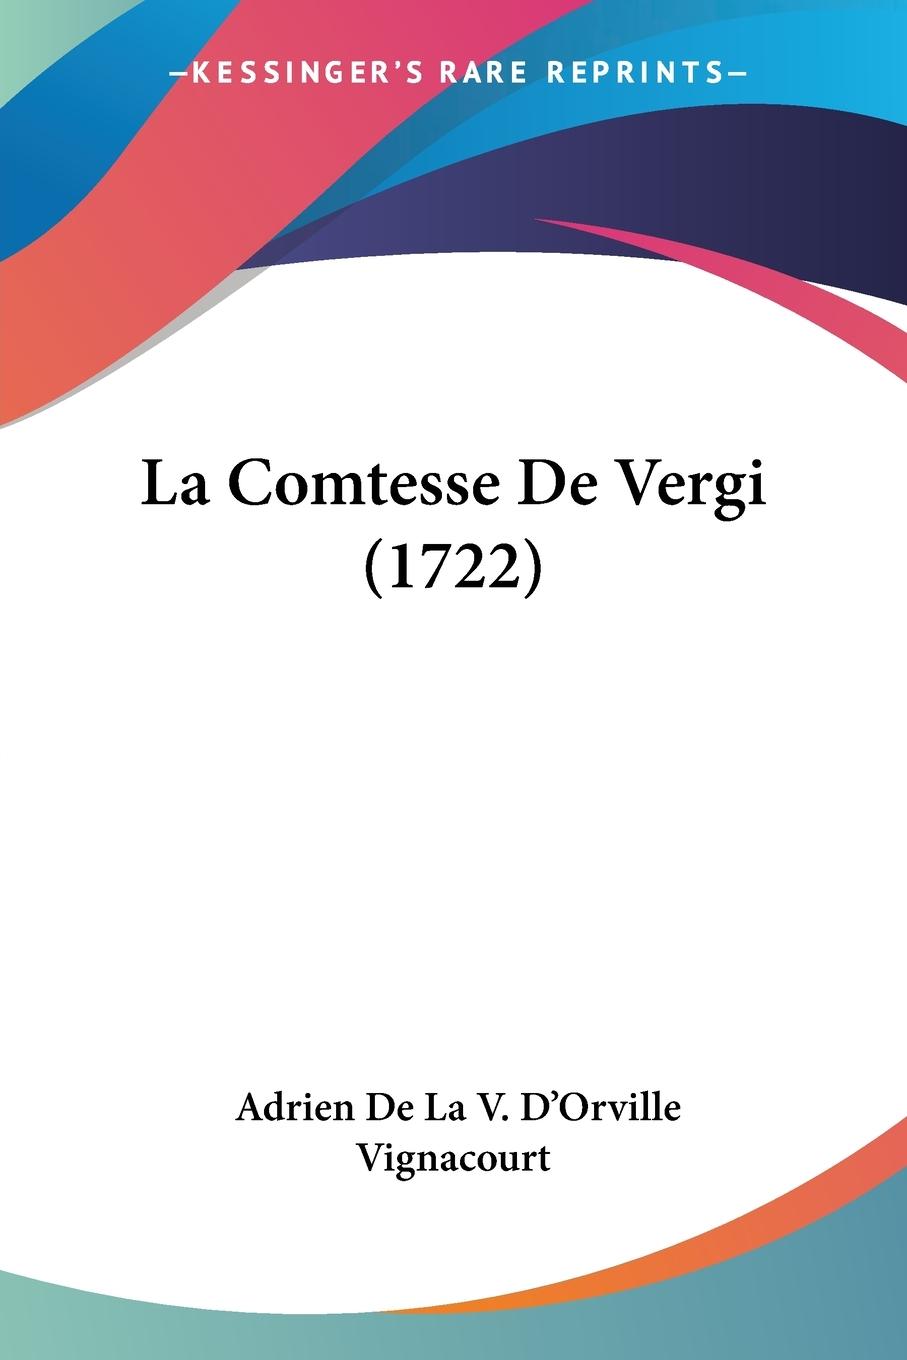 La Comtesse De Vergi (1722) - Vignacourt, Adrien De La V. D Orville